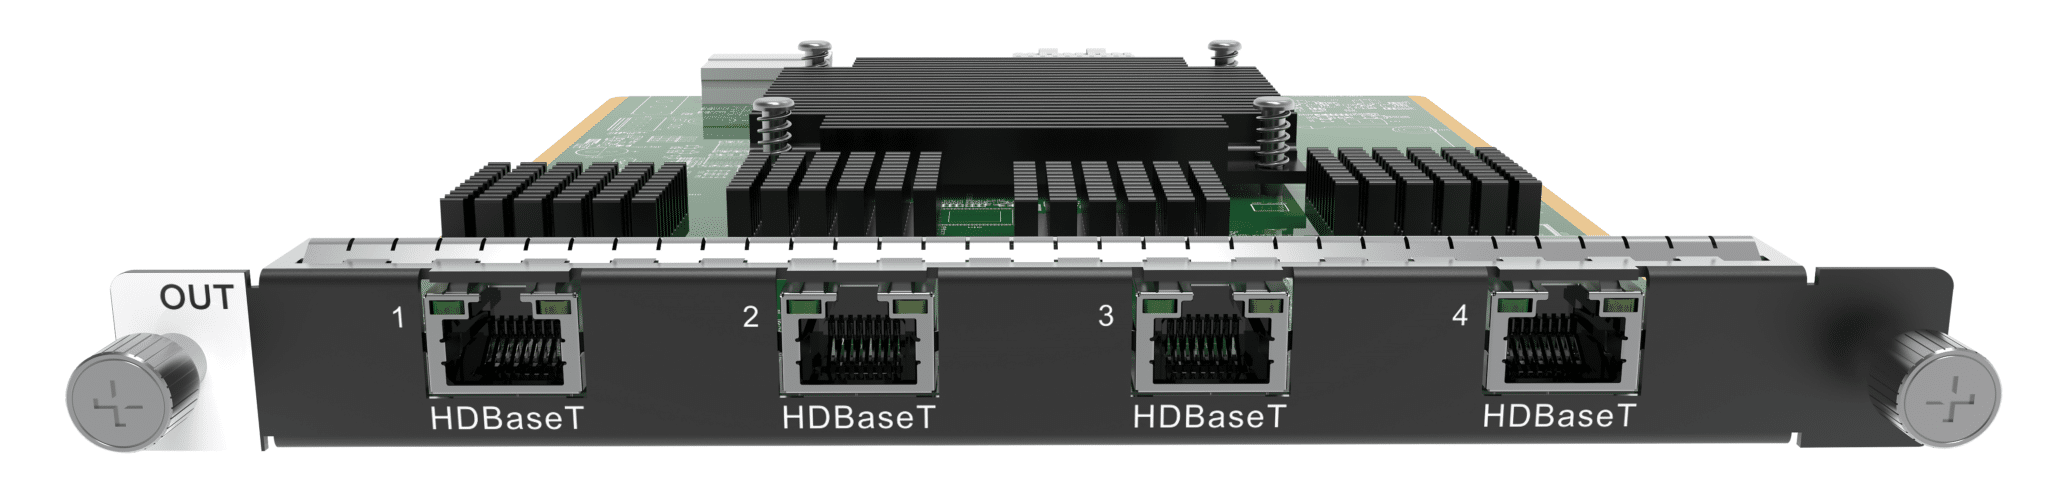 H Series 4x HDBaseT output card - Onlinediscowinkel.nl